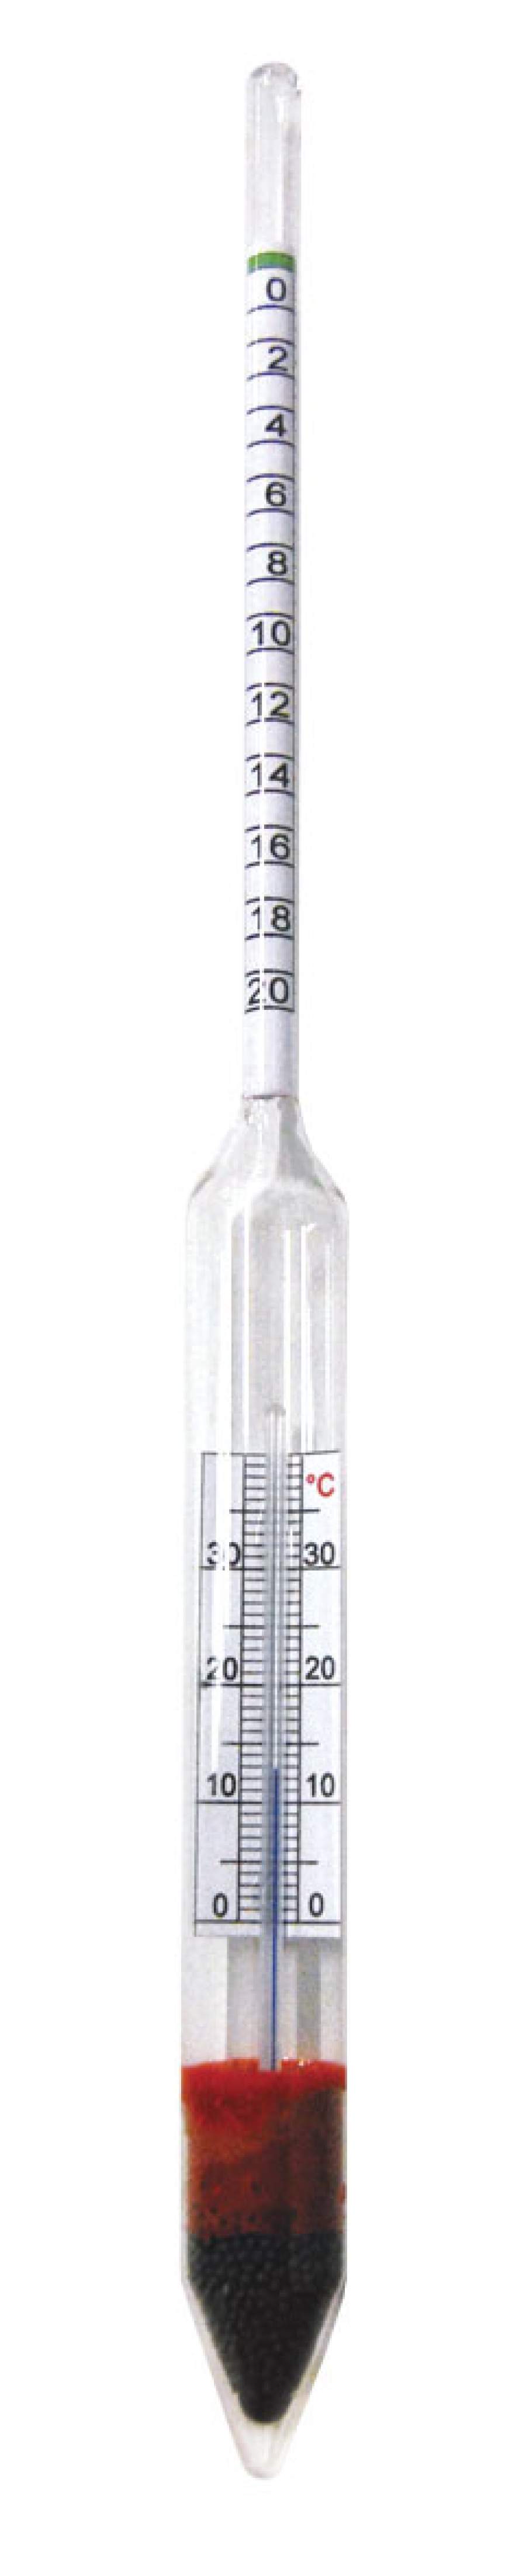 densimètre à bière hobby 0-20% extrait +thermometre